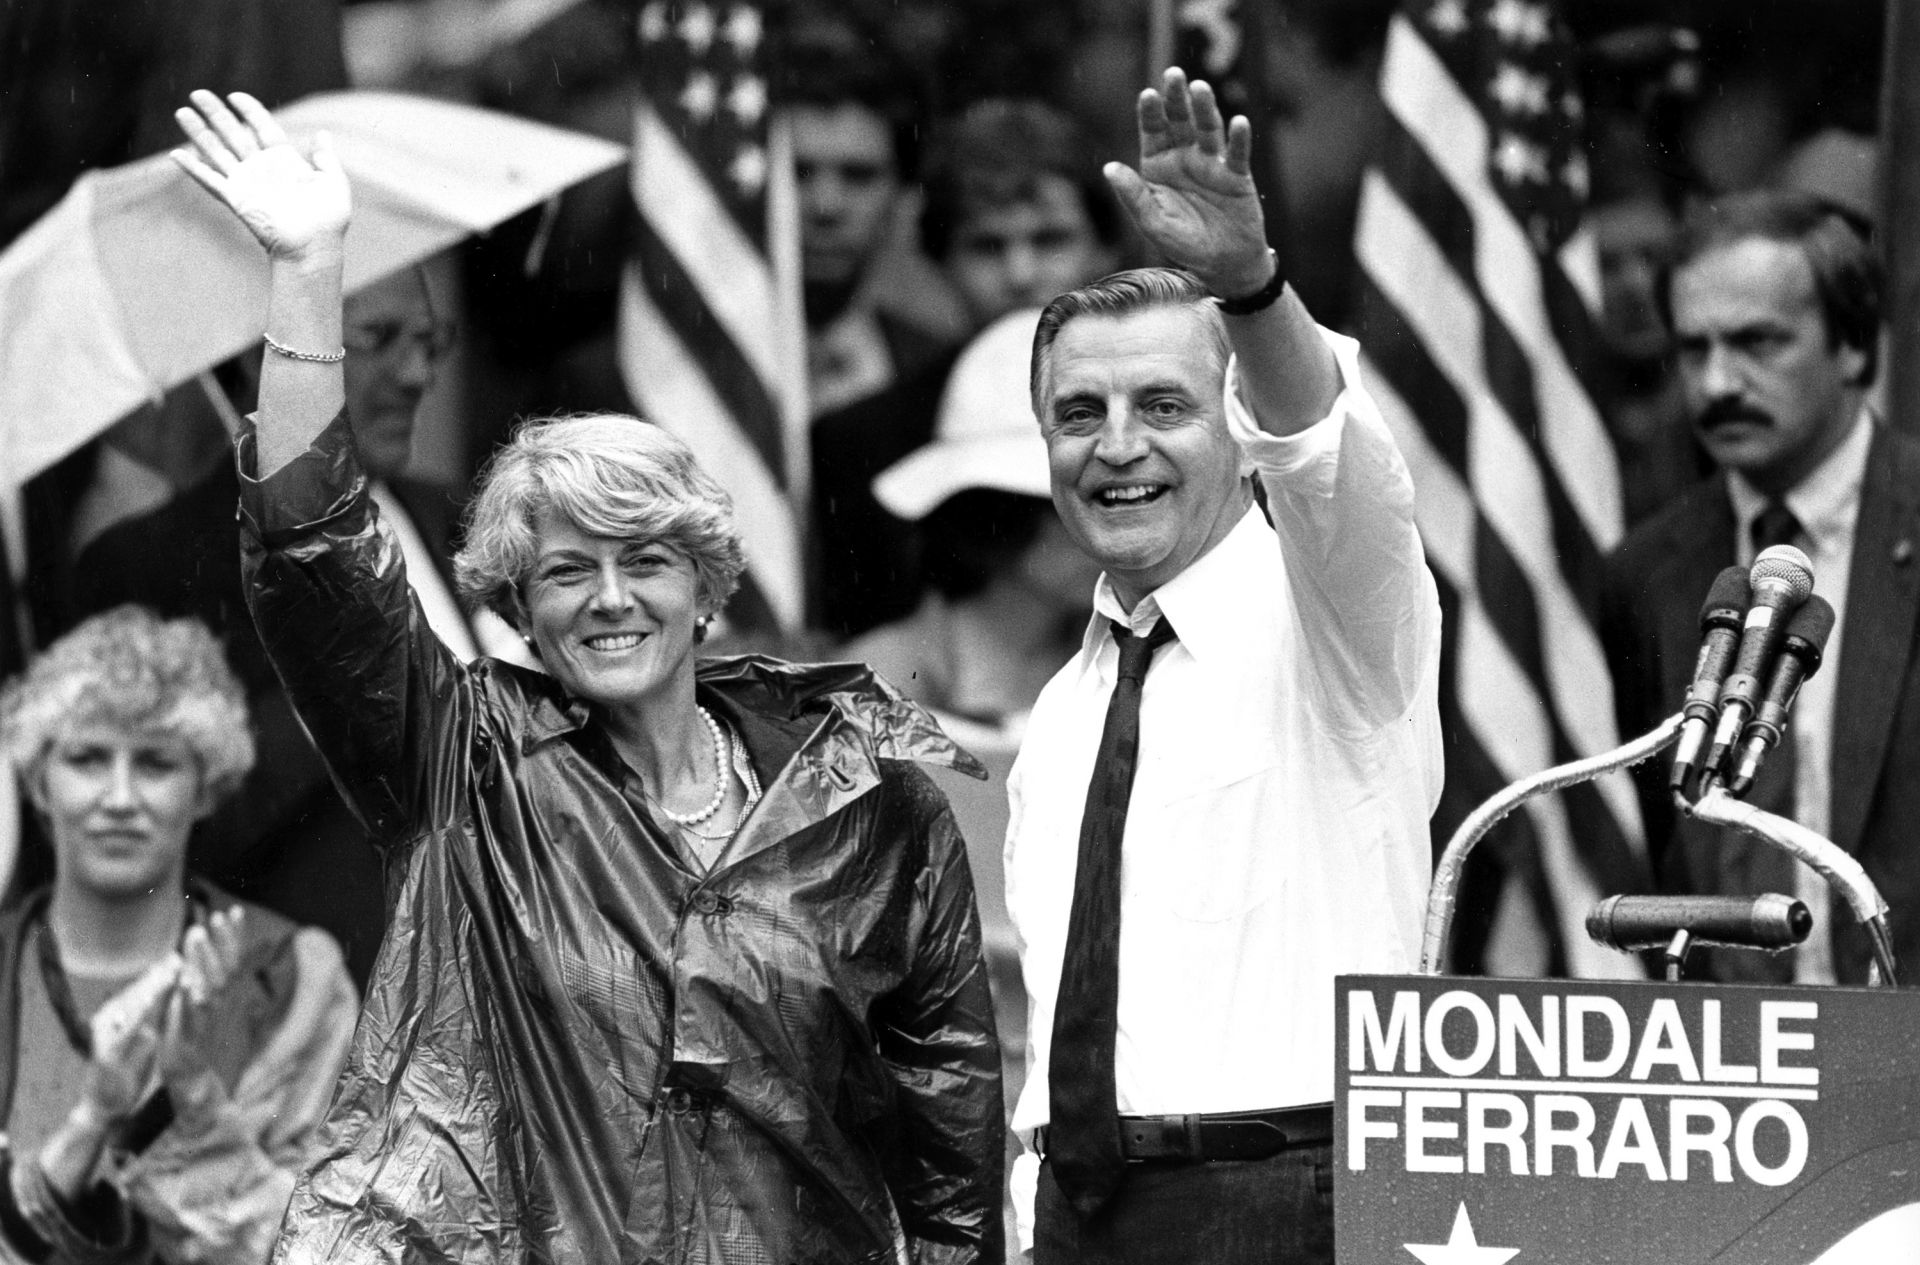 1984 г. - Уолтър Мондейл се кандидатира за президент заедно с Джералдин Фераро - първата жена, номинирана за този пост